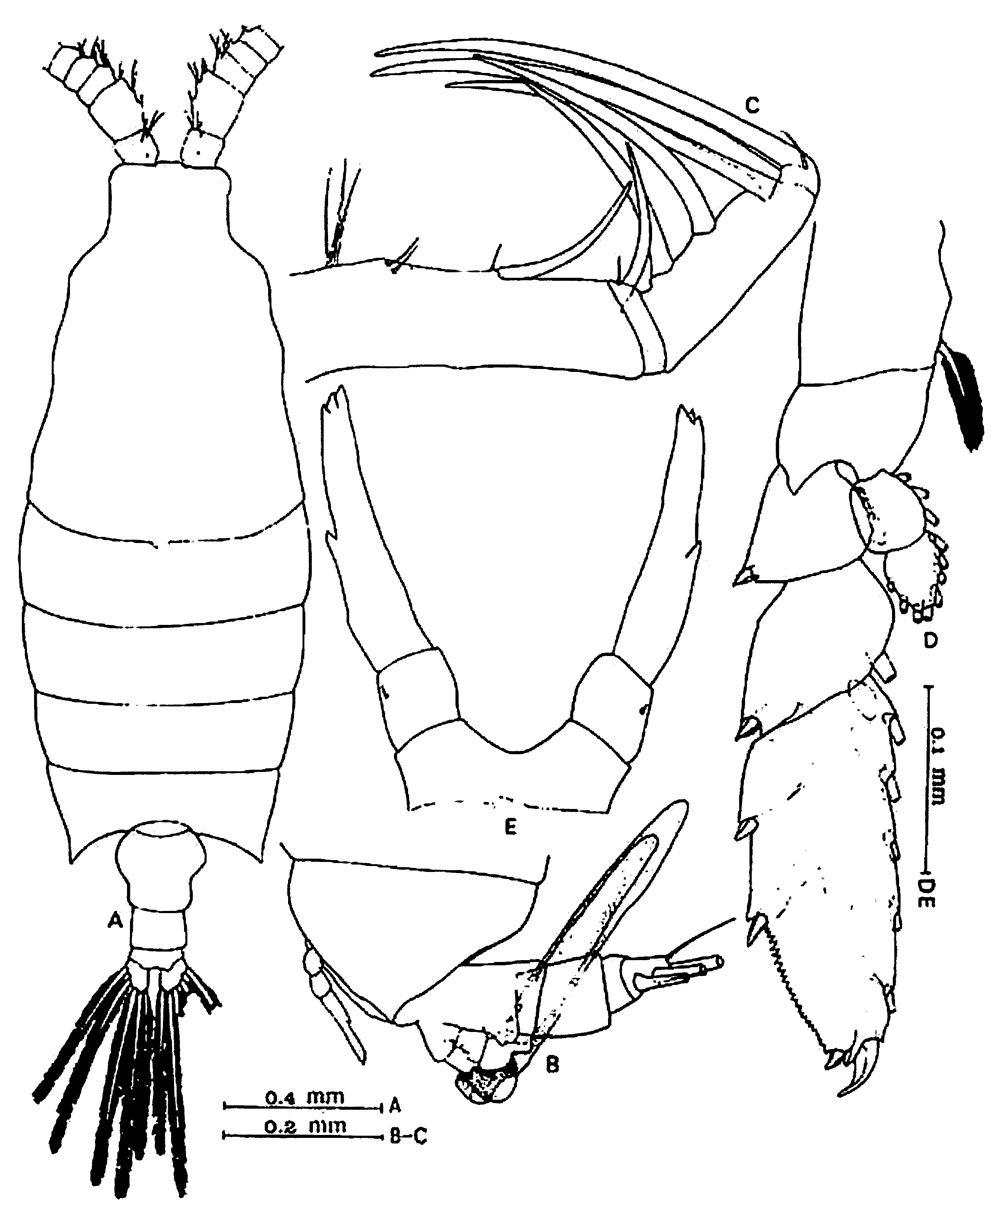 Espèce Candacia longimana - Planche 10 de figures morphologiques